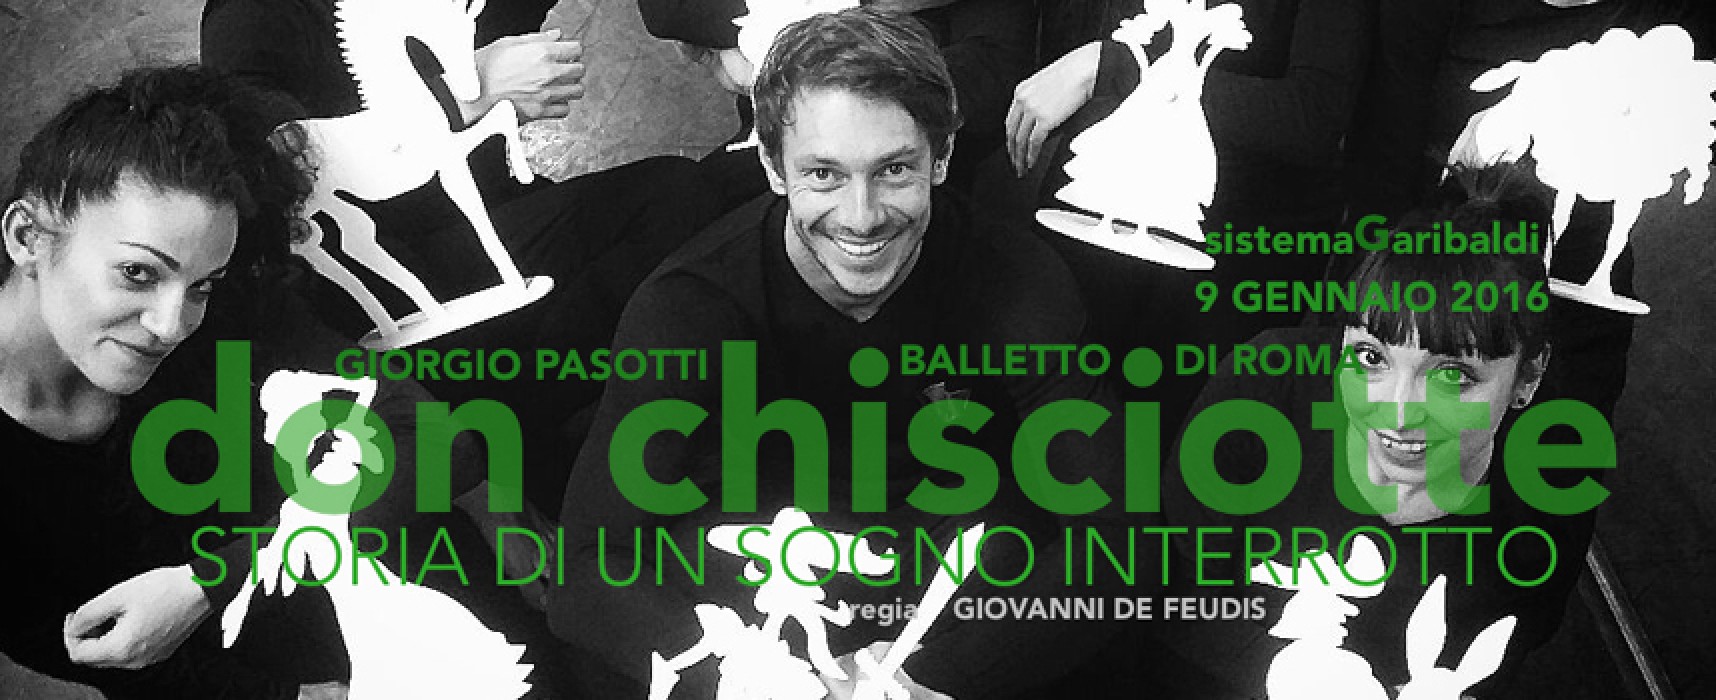 “Il viaggio” di Don Chisciotte fa tappa al teatro Garibaldi: protagonista Giorgio Pasotti